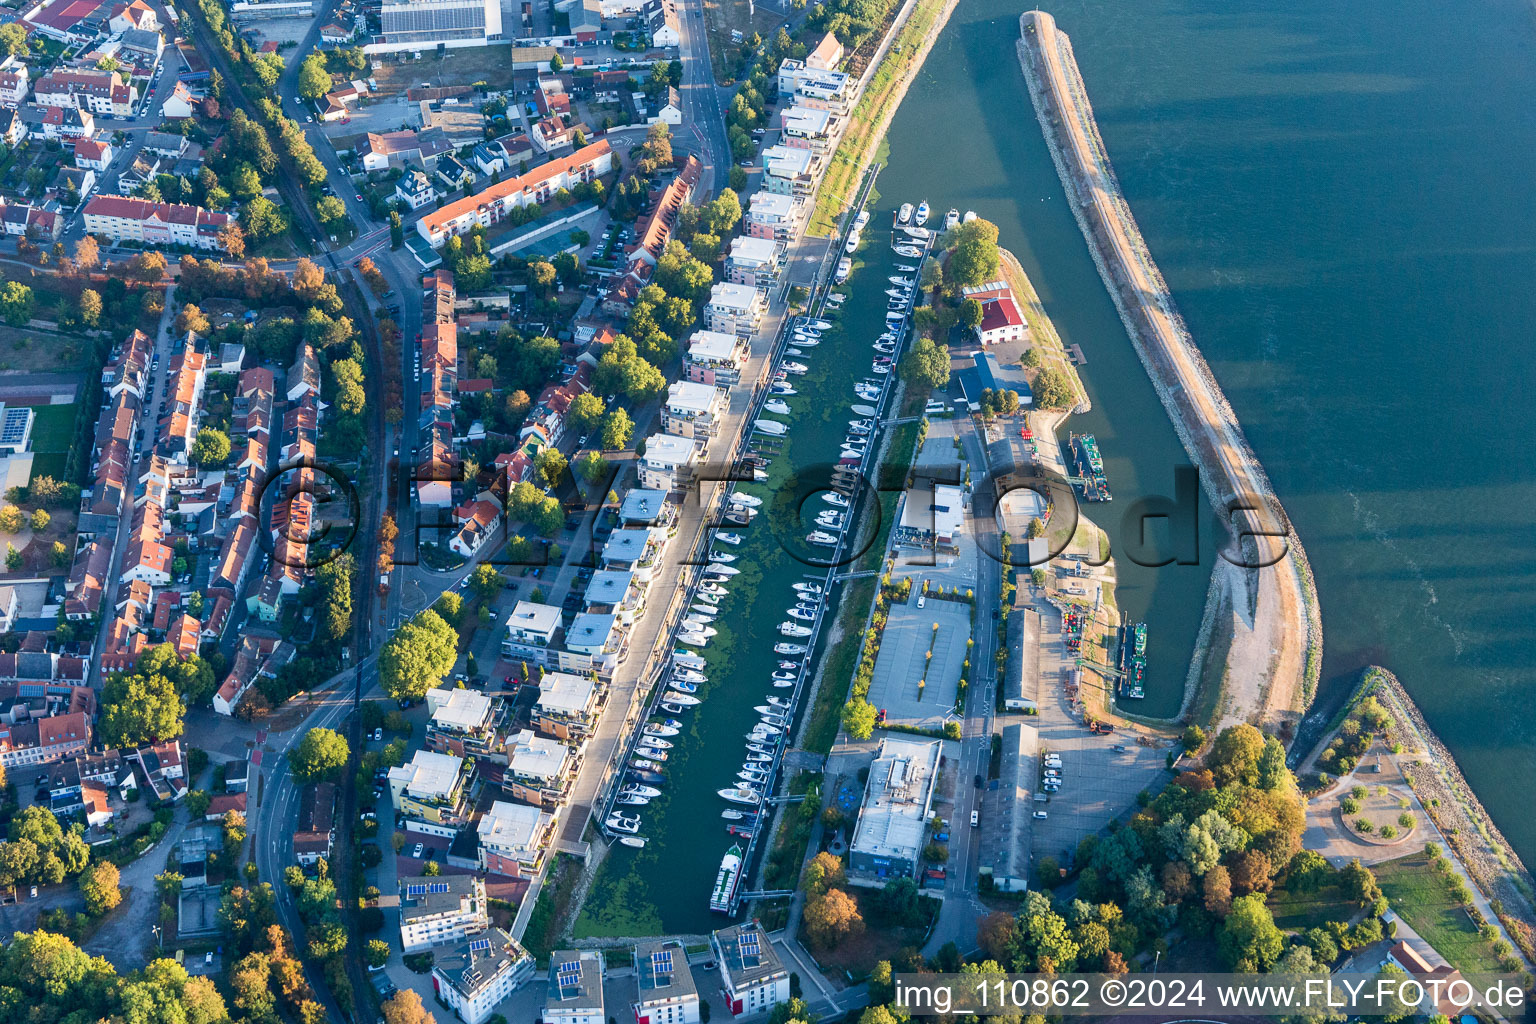 Wohnbebauung an der Hafenstraße gegenüber des Yachthafen mit Sportboot- Anlegestellen und Bootsliegeplätzen am Uferbereich des alten Hafen am Rhein in Speyer im Bundesland Rheinland-Pfalz, Deutschland